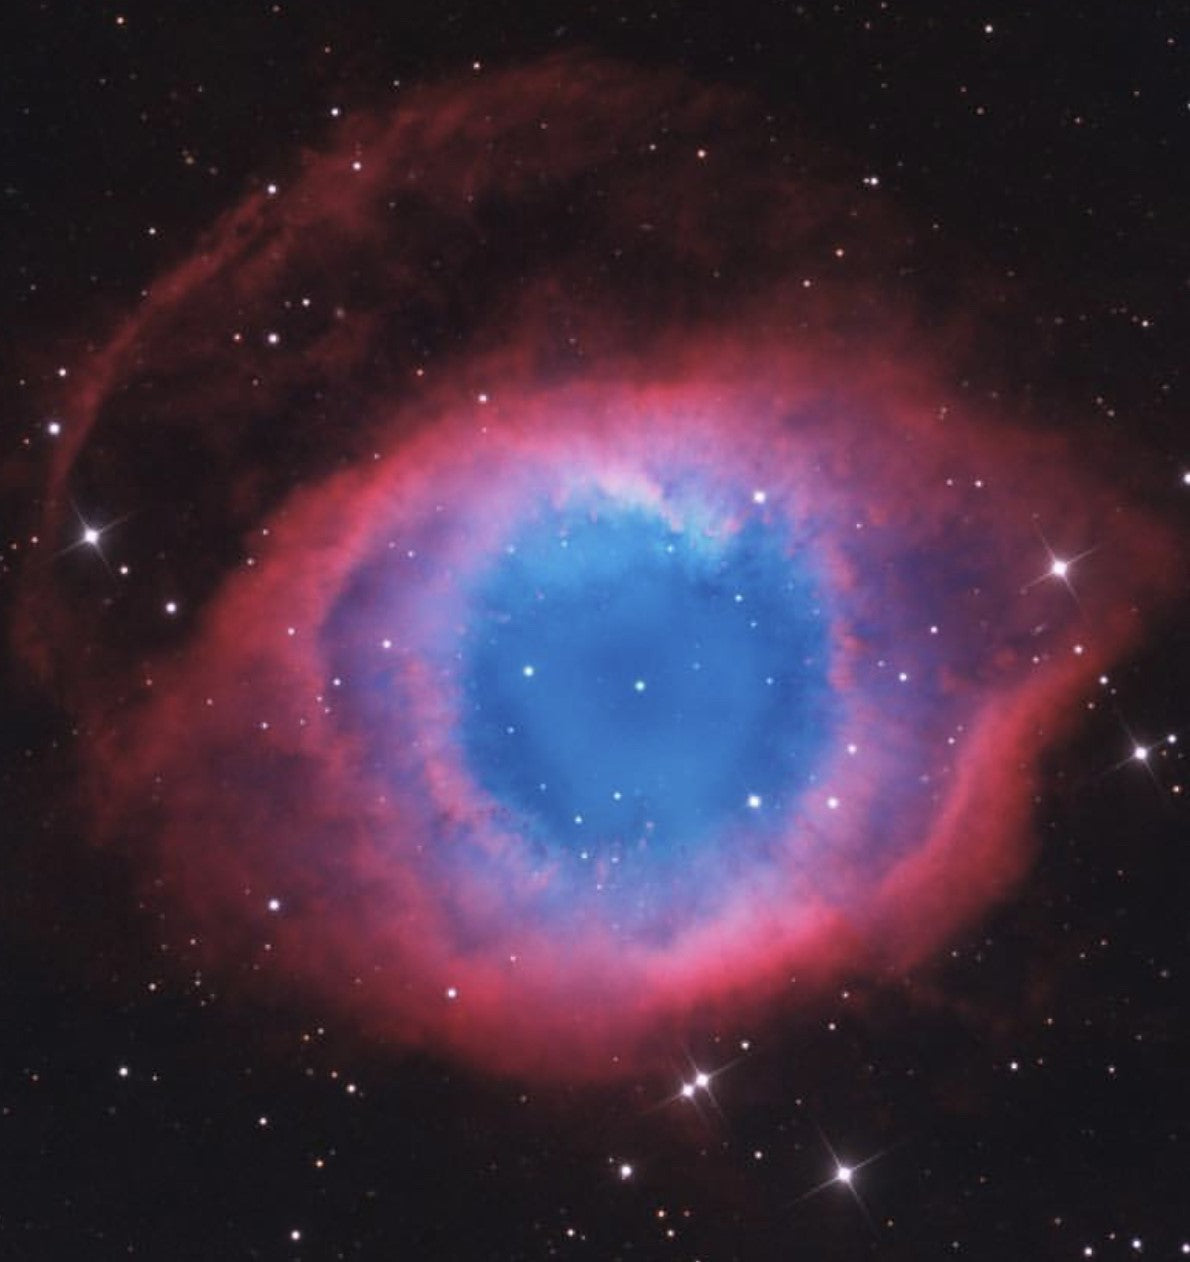 Eye Of Sauron- Helix Nebula